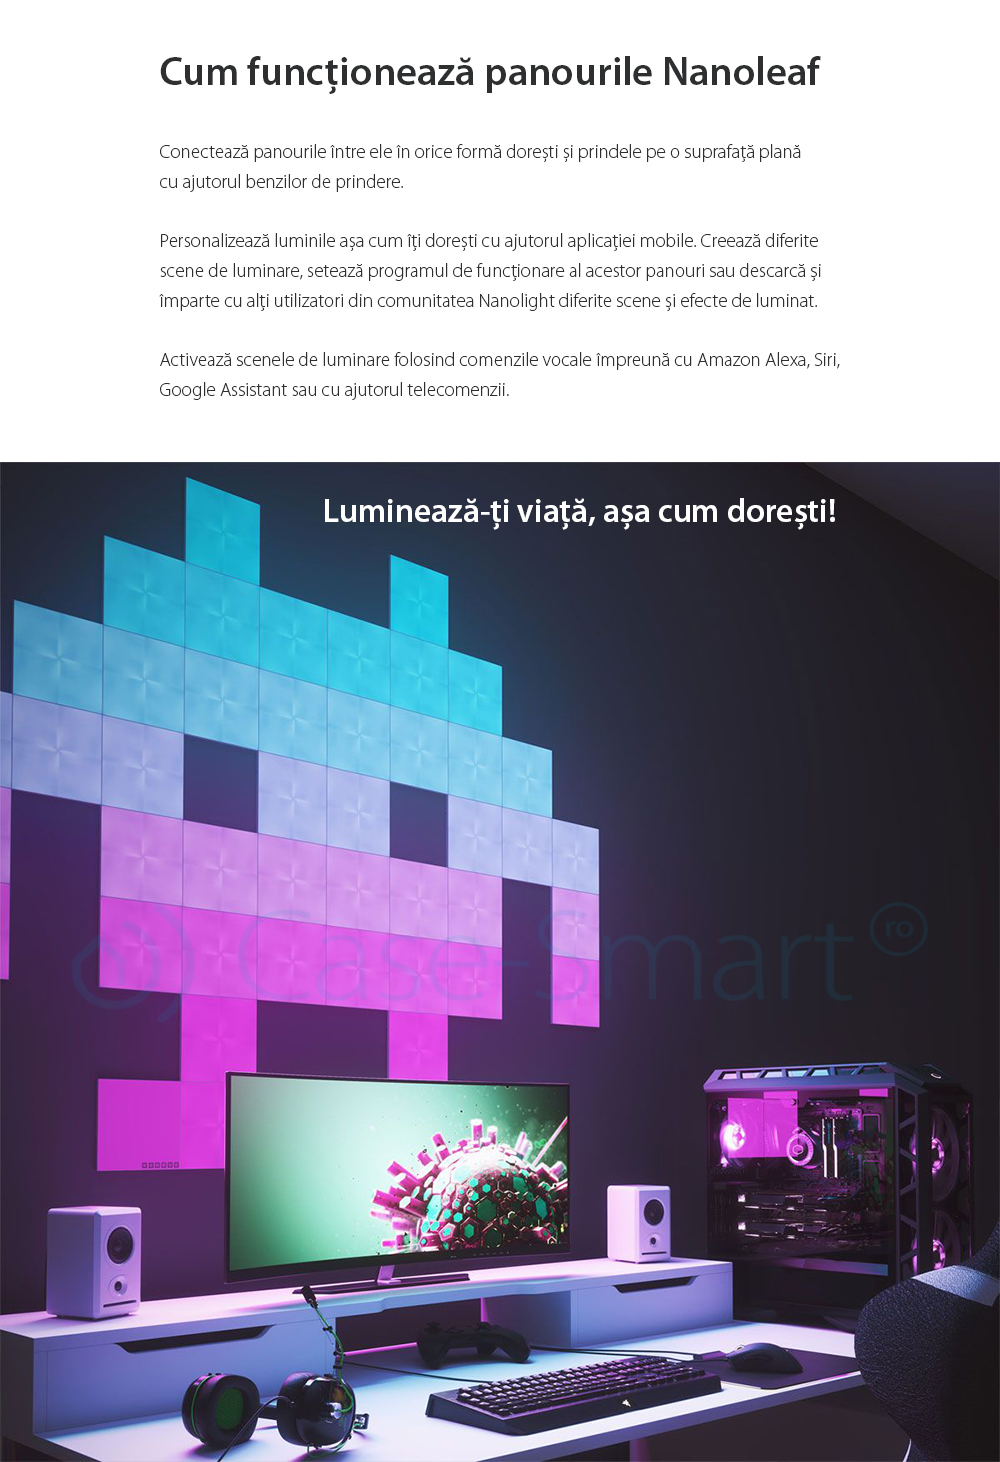 Kit 9 Panouri luminoase inteligente Nanoleaf Canvas cu senzor muzica, LED RGBW, Wi-Fi, Control tactil, Control de pe telefonul mobil